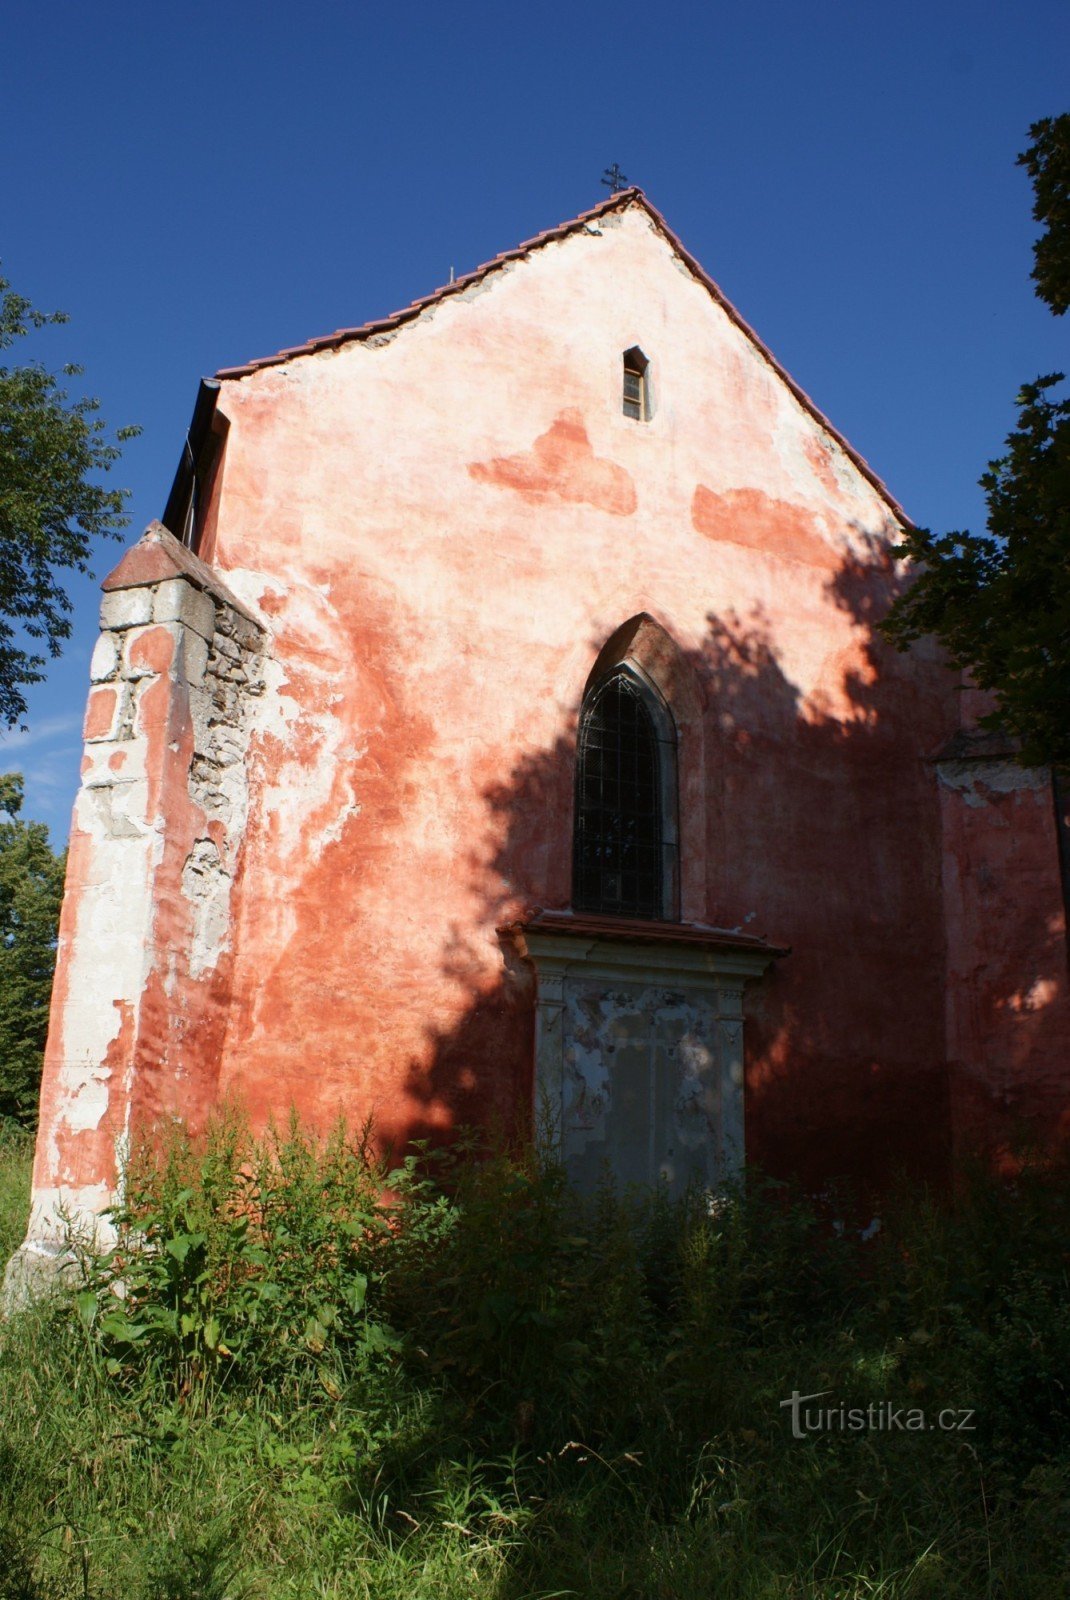 Boletice - church of St. Nicholas